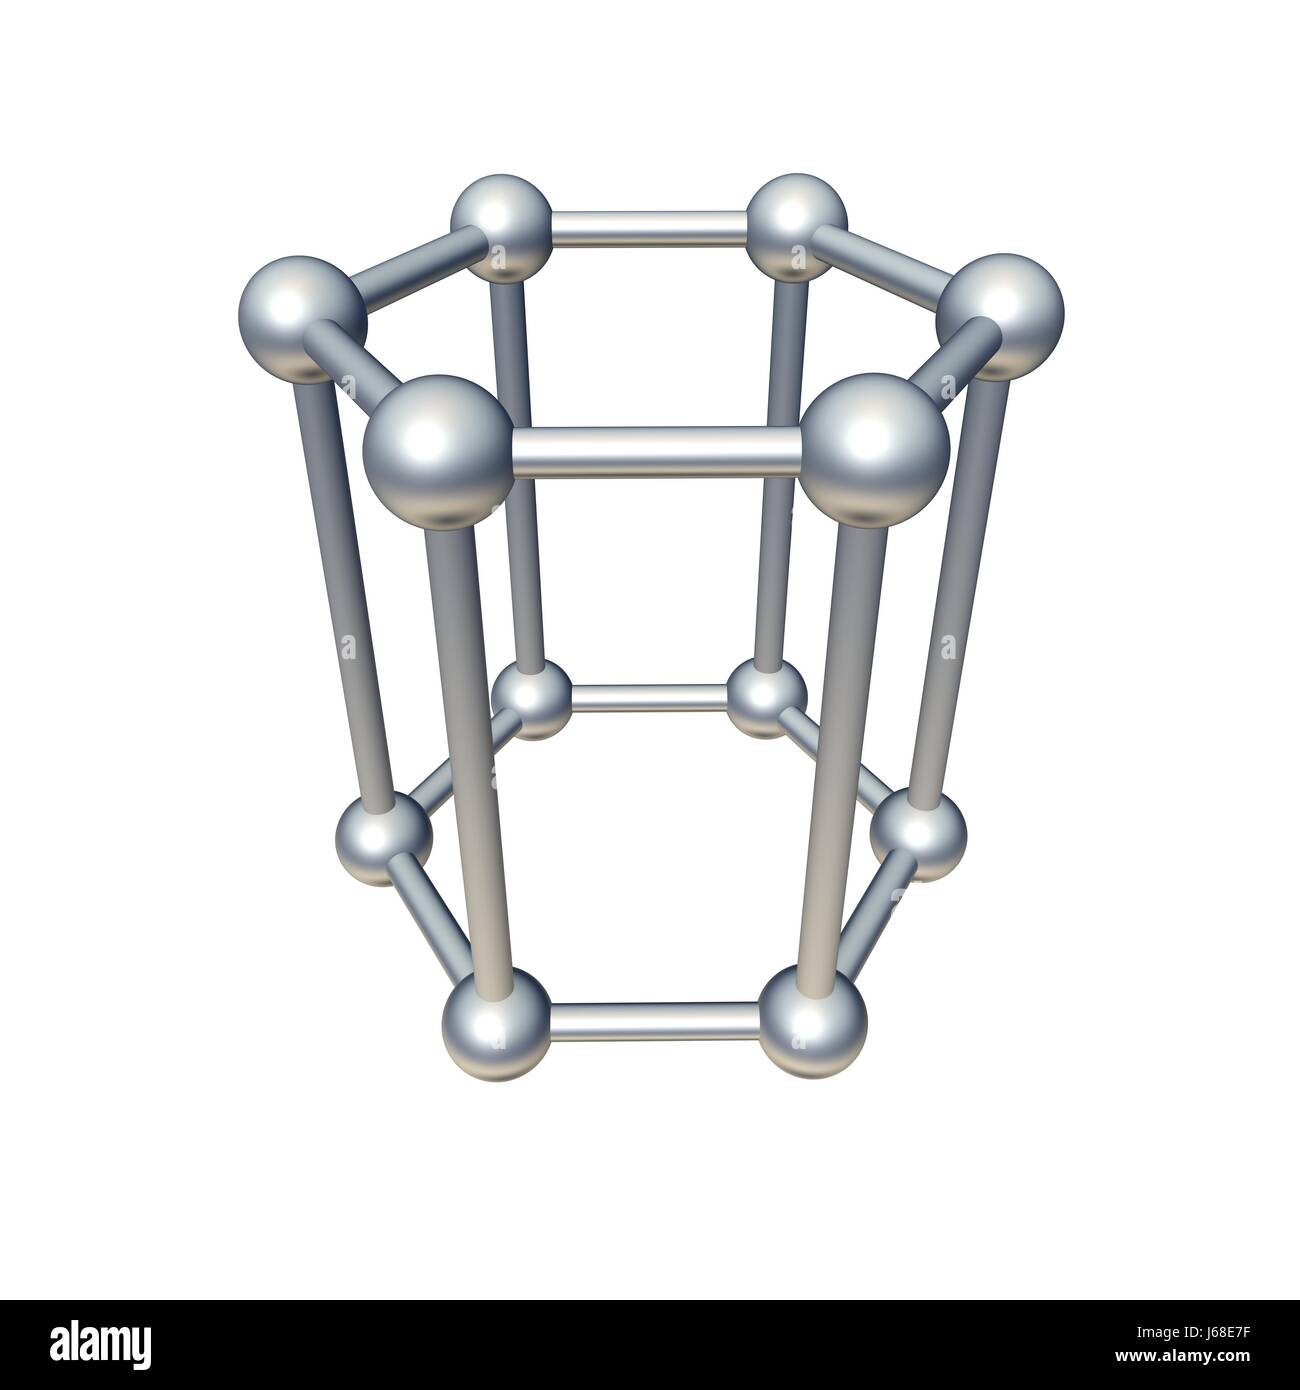 Spatiale de l'atome cubique bloc modèle hexagonale solide isolé de l'objet connecté affinité Banque D'Images